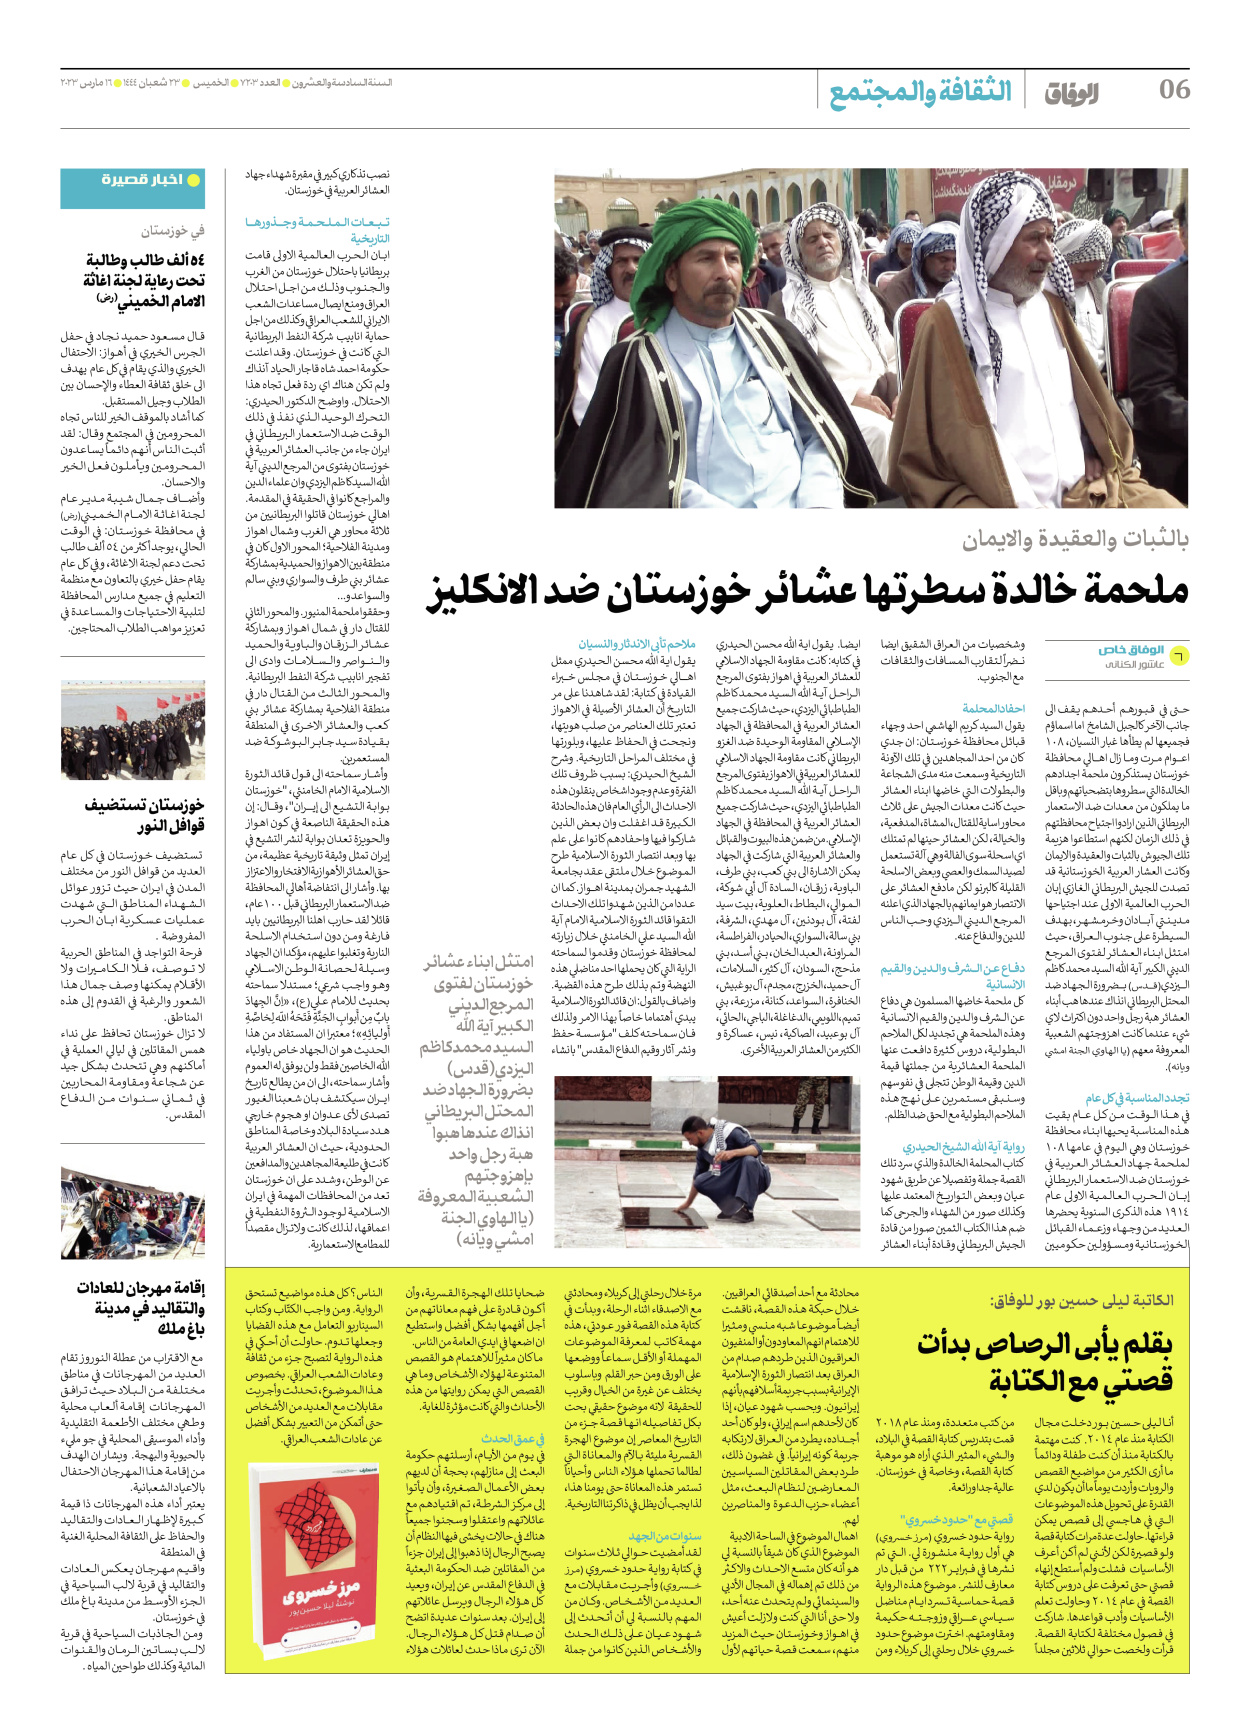 صحیفة ایران الدولیة الوفاق - العدد سبعة آلاف ومائتان وثلاثة - ١٦ مارس ٢٠٢٣ - الصفحة ٦